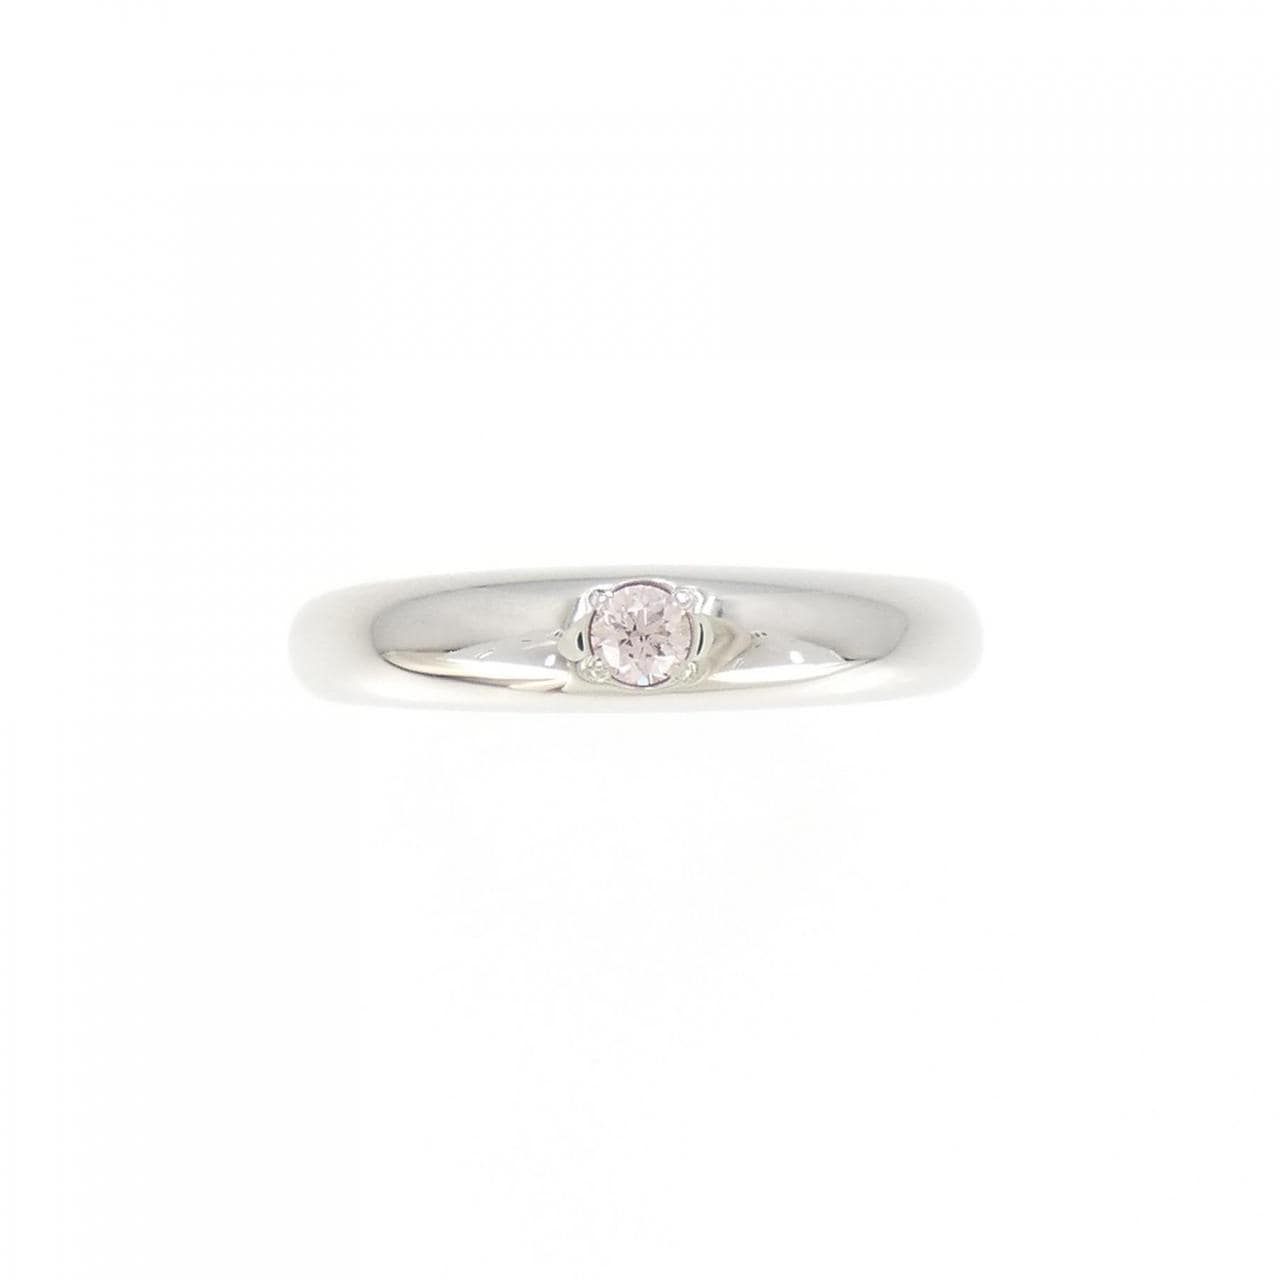 K18WG Pink diamond ring 0.07CT